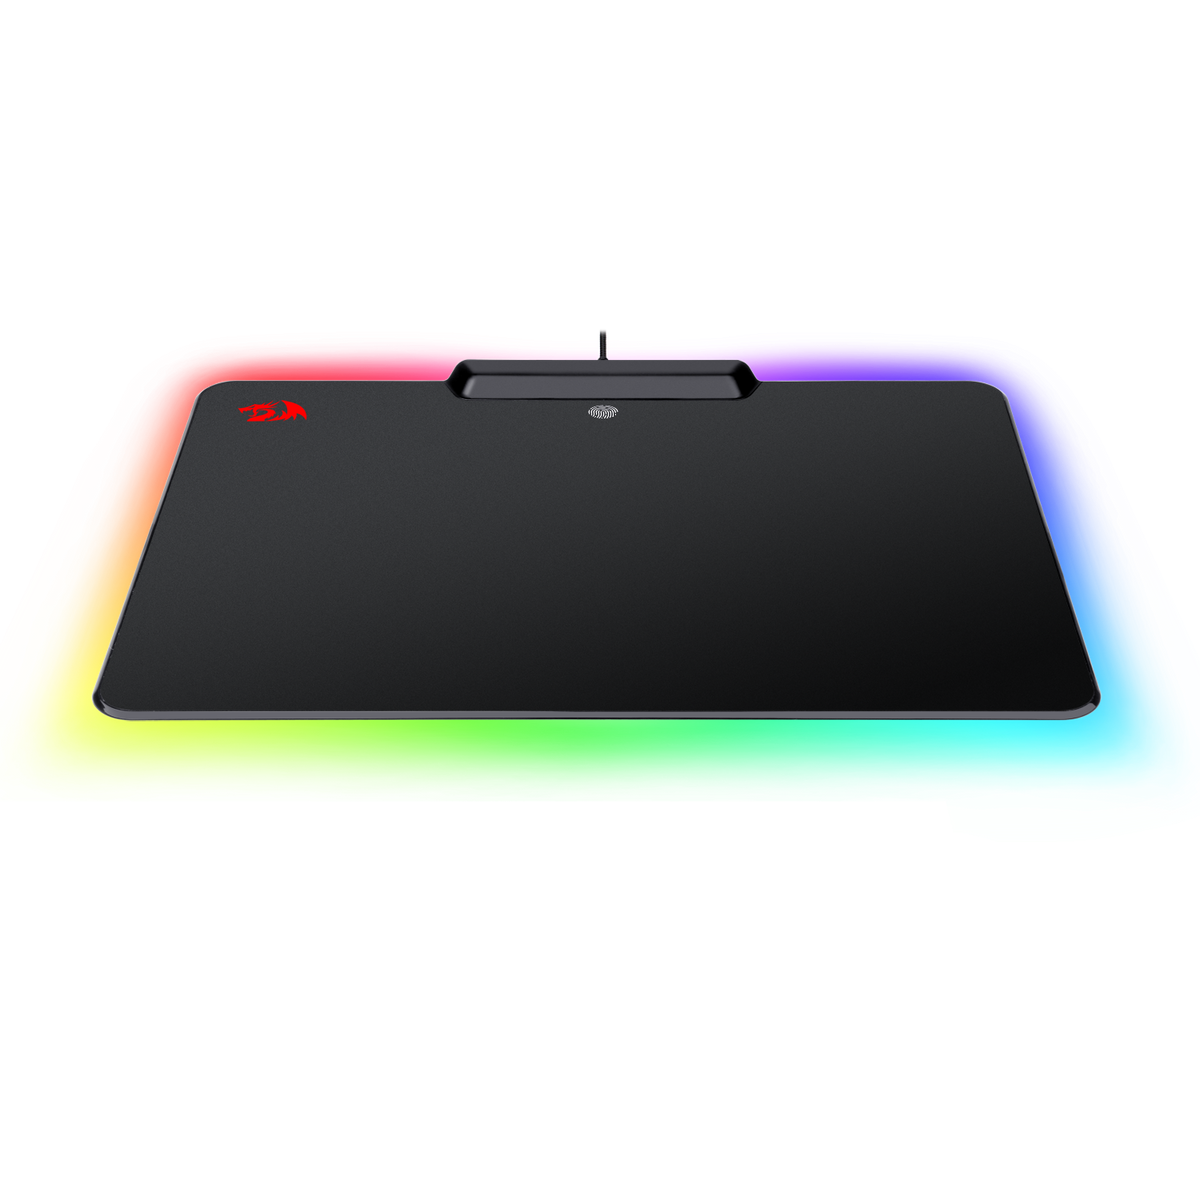 Tapis de souris gamer redragon epeius (p009) retro-éclairage rgb 16,8  millions de couleurs par usb et gestion par logiciel - Conforama